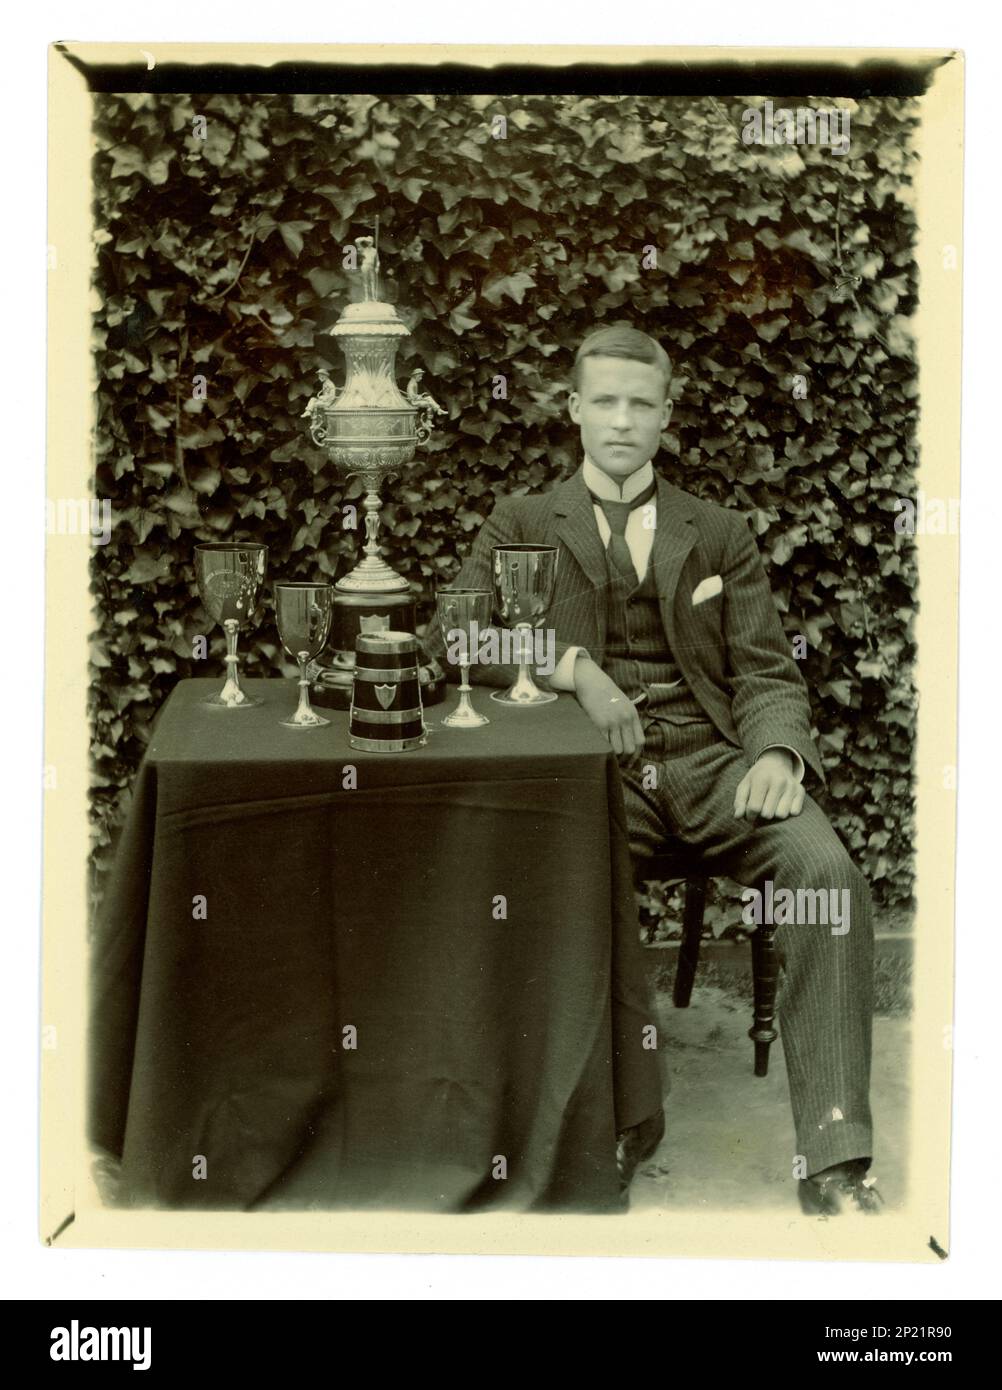 Photo victorienne originale de gent, sur une table, il y a un grand vase de défi de Worcester, / régate trophée pour l'aviron, et d'autres coupes, éventuellement membre d'une équipe de quatre en boîte. Région de Worcester, Royaume-Uni vers 1897-1899. Banque D'Images